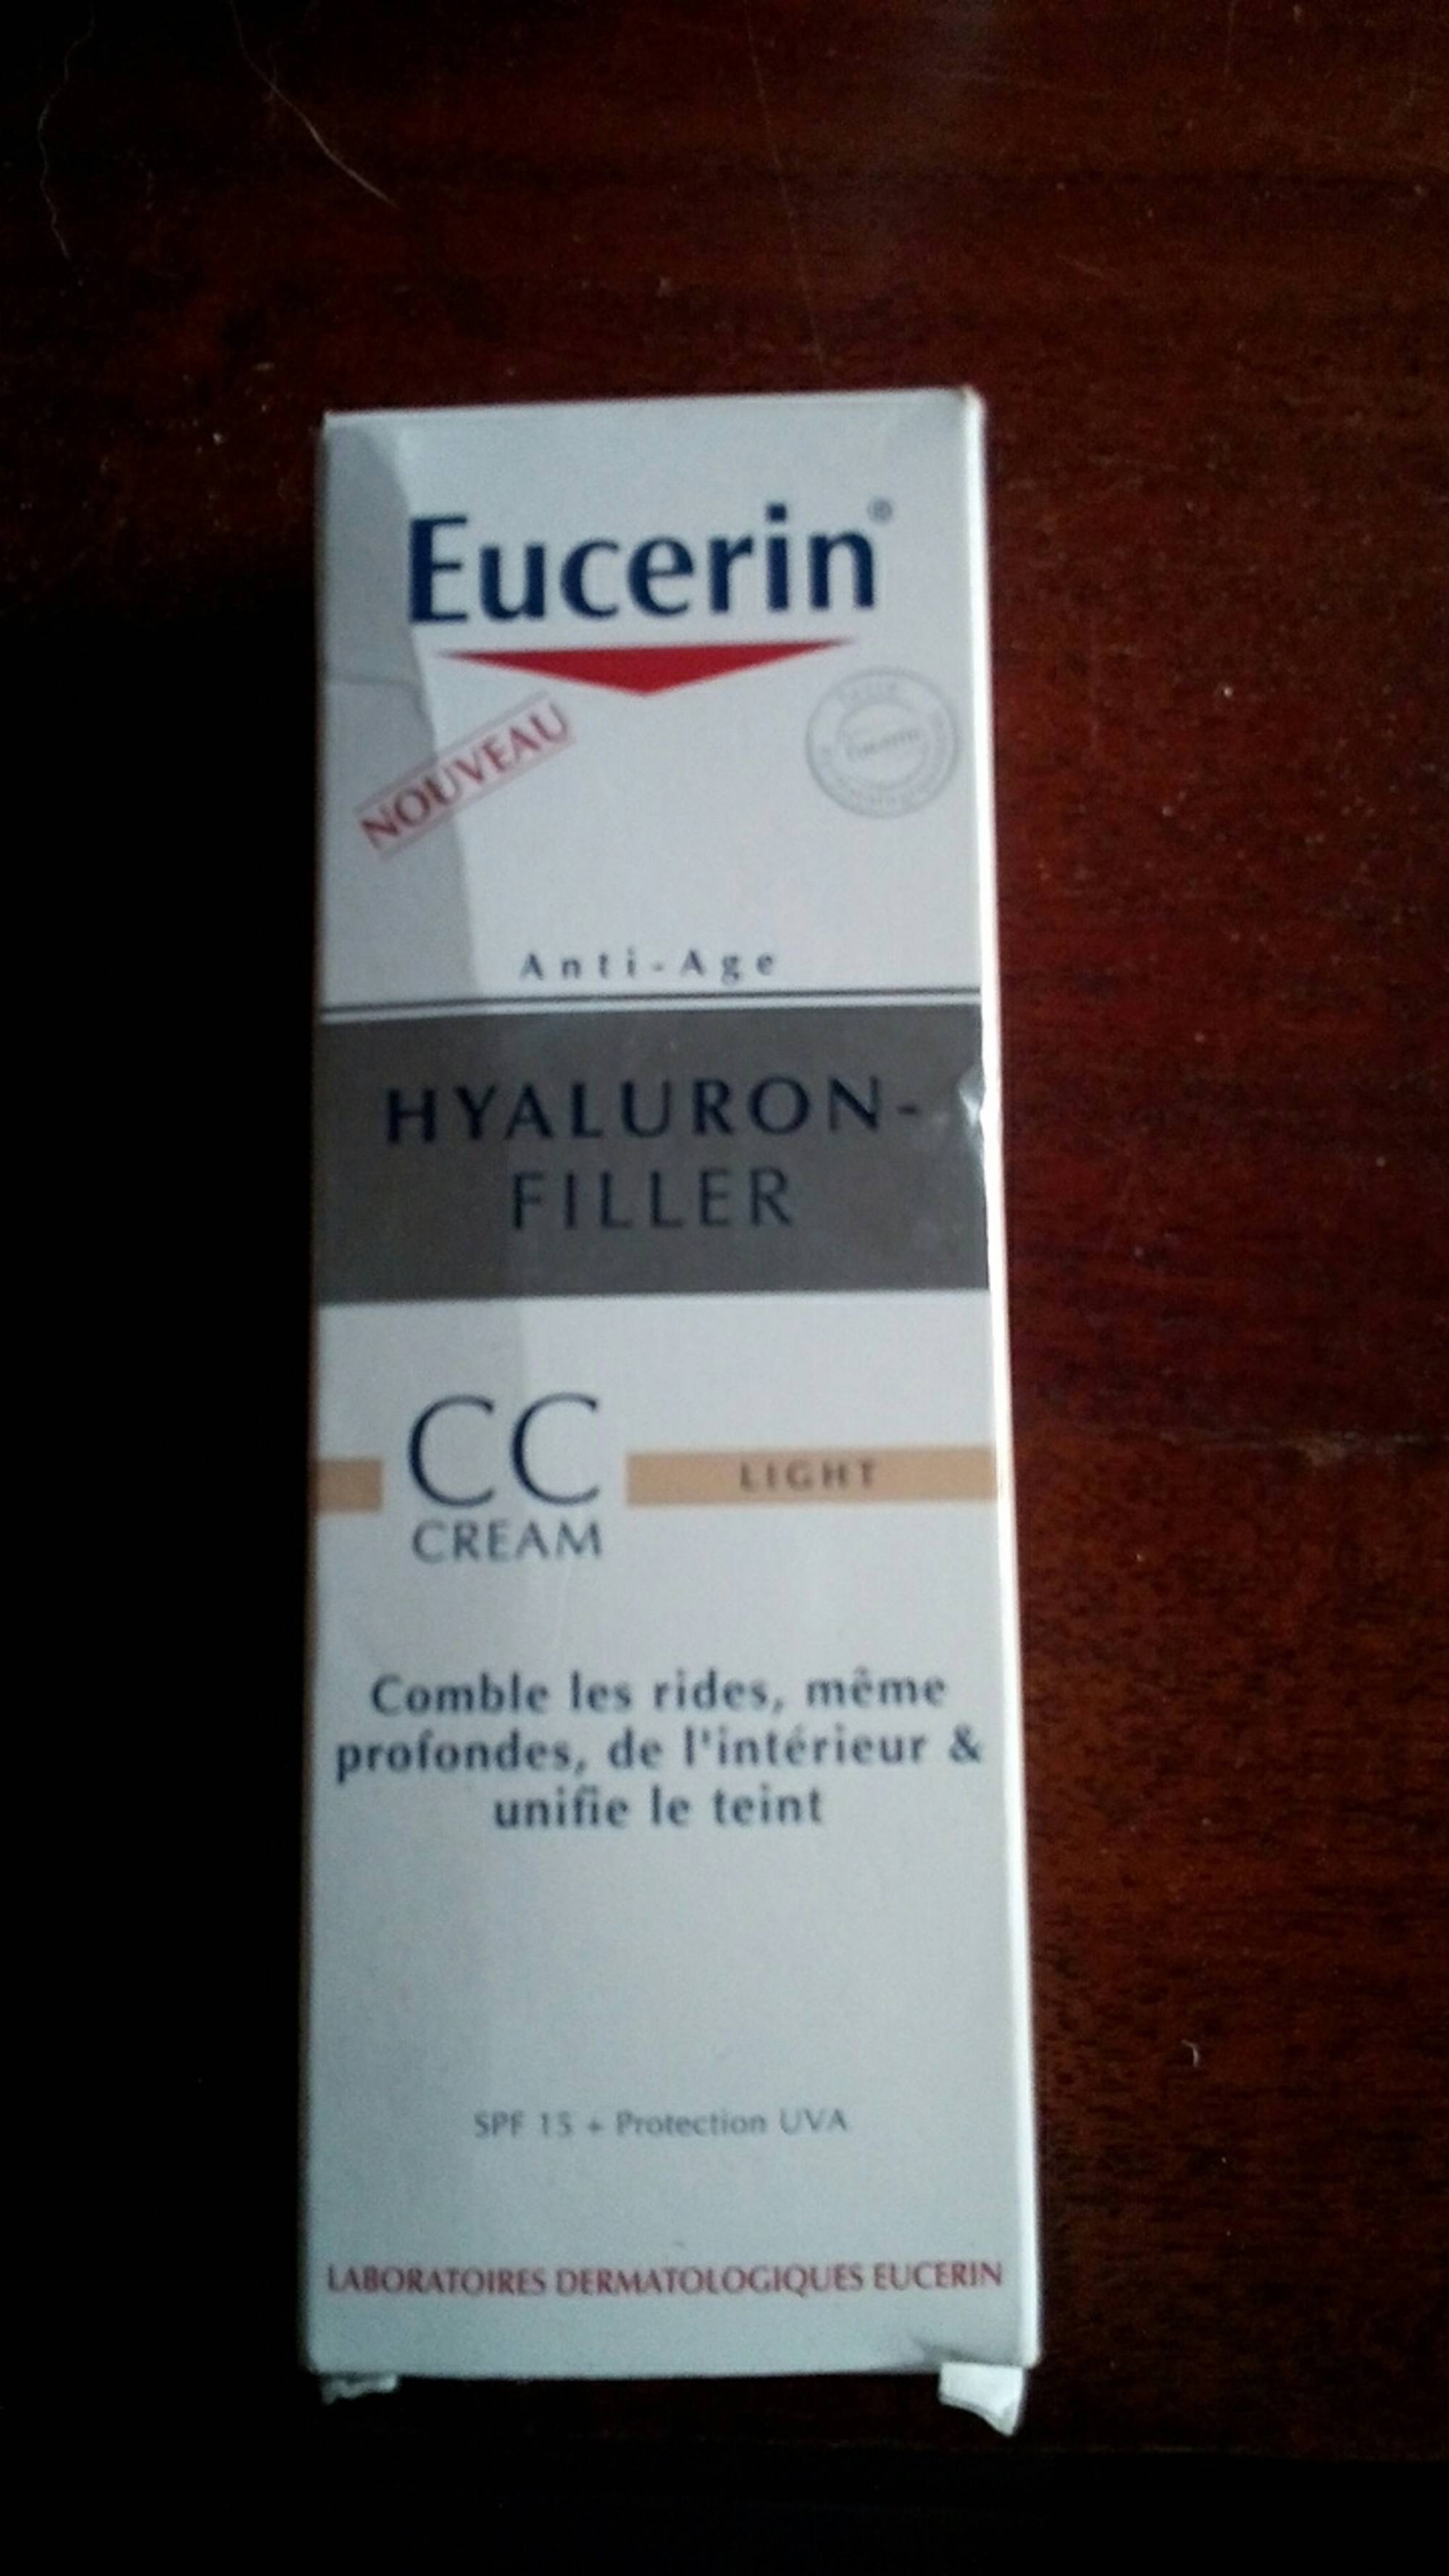 EUCERIN - Hyaluron-Filler - CC cream light SPF 15 + Protection UVA